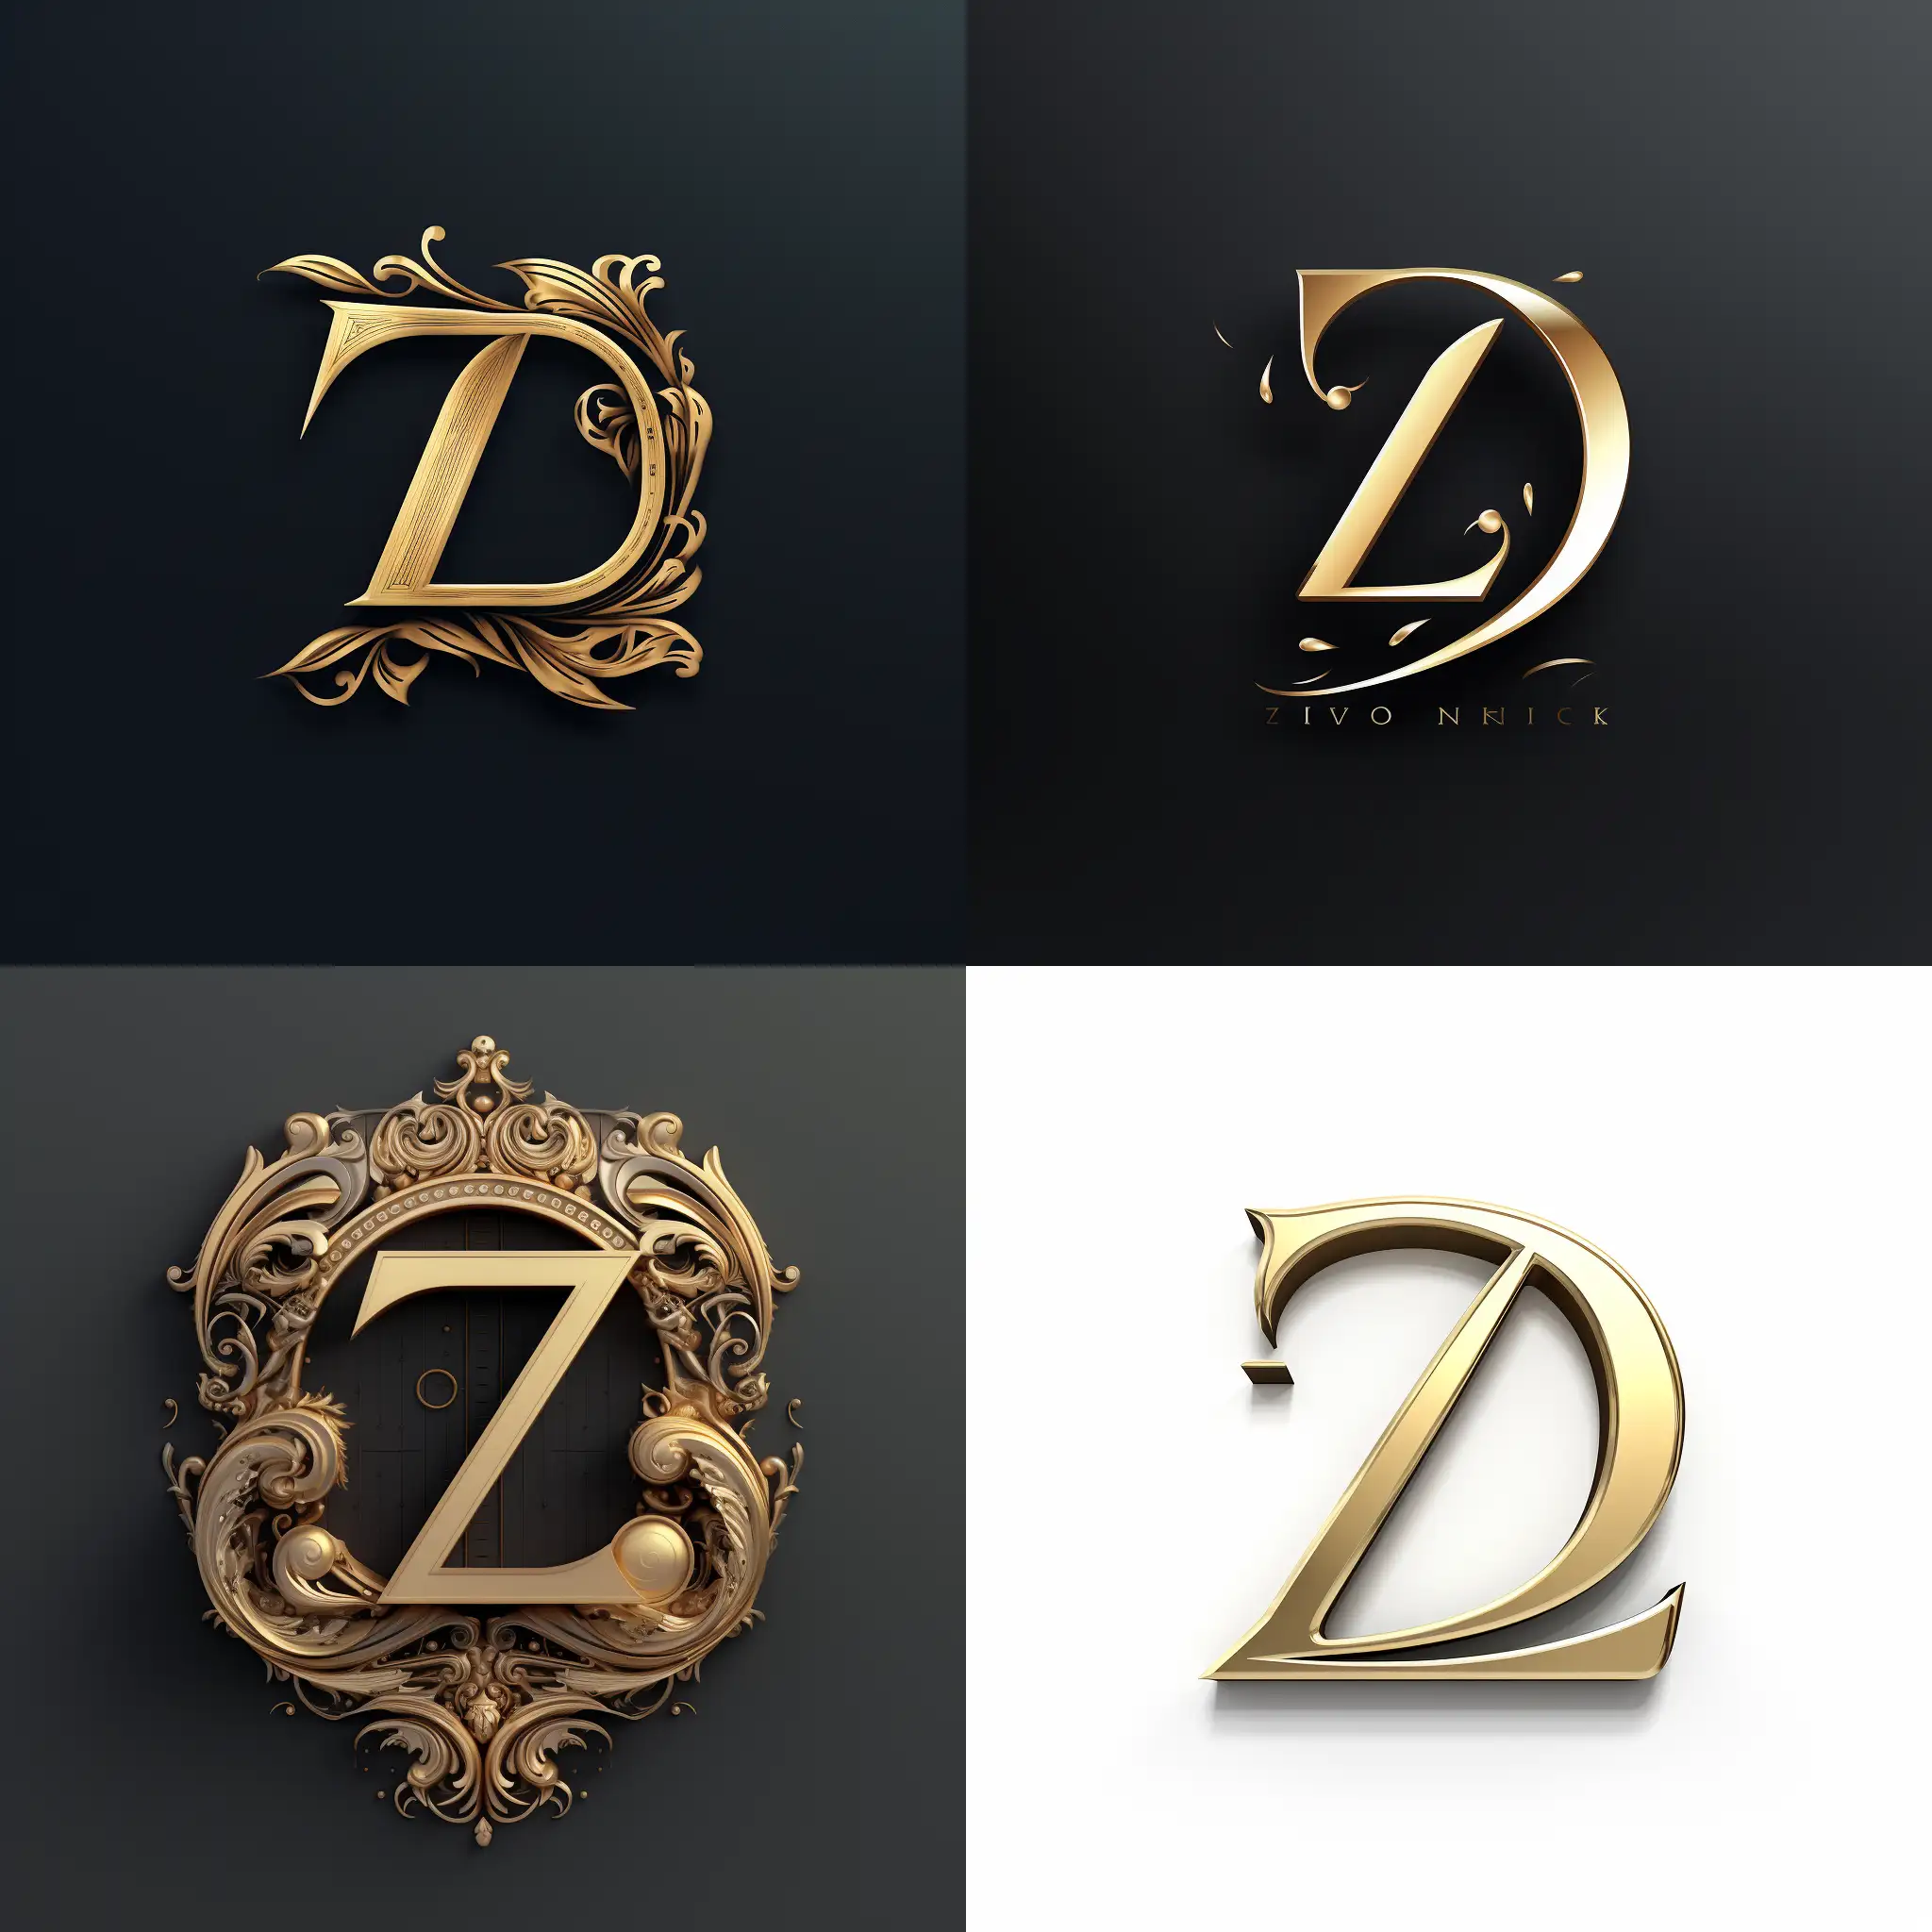 Stylish-and-Elegant-Logo-with-the-Letter-DiZ